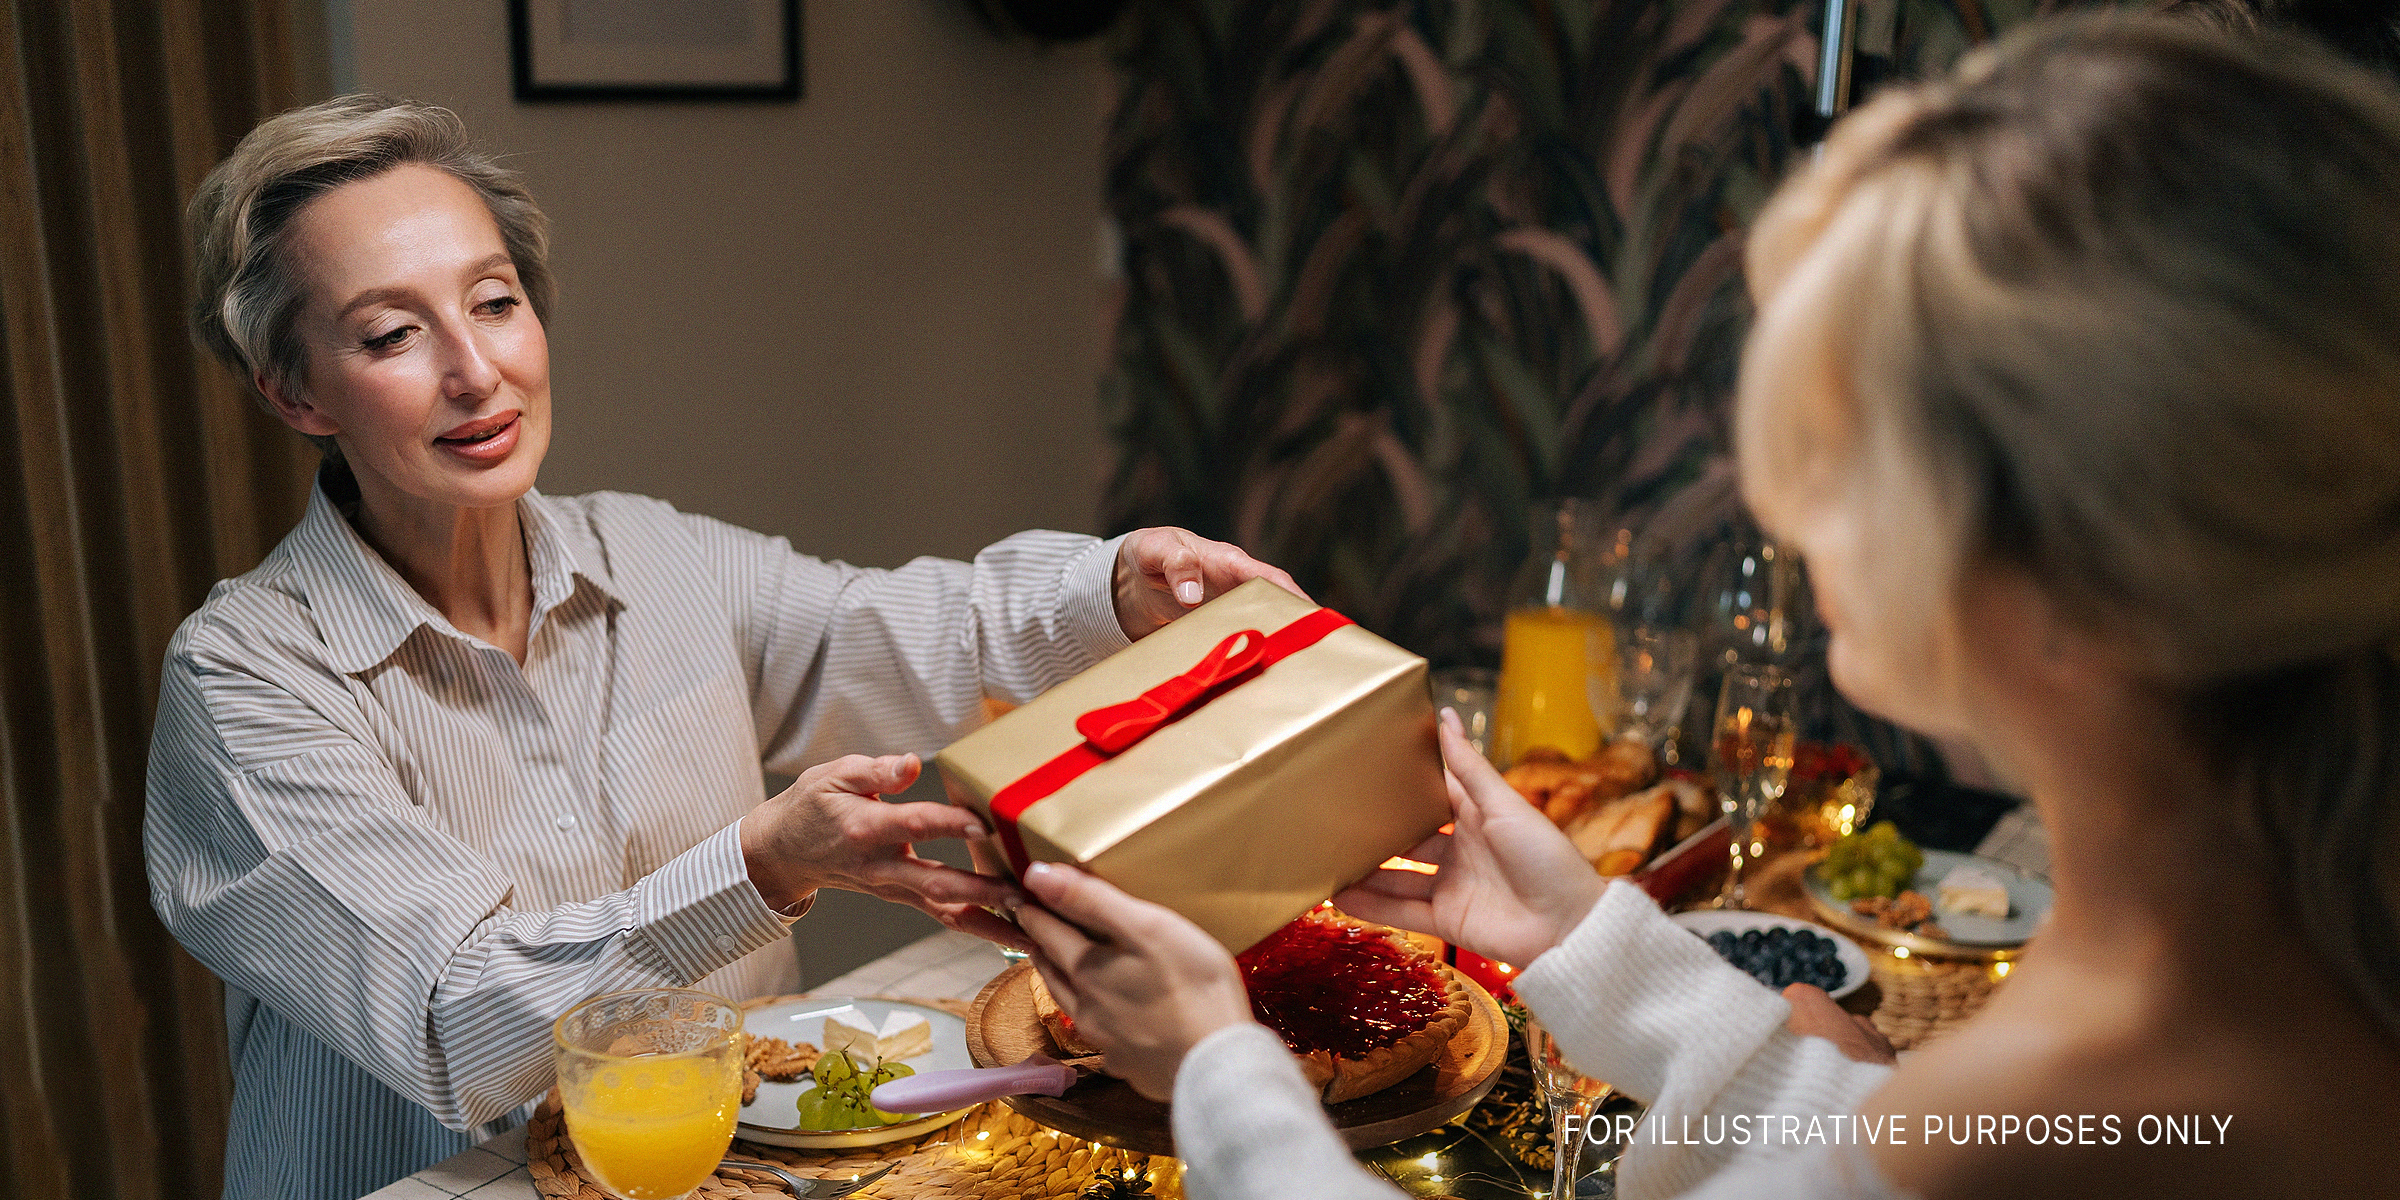 Woman hands over a present | Source: Shutterstock